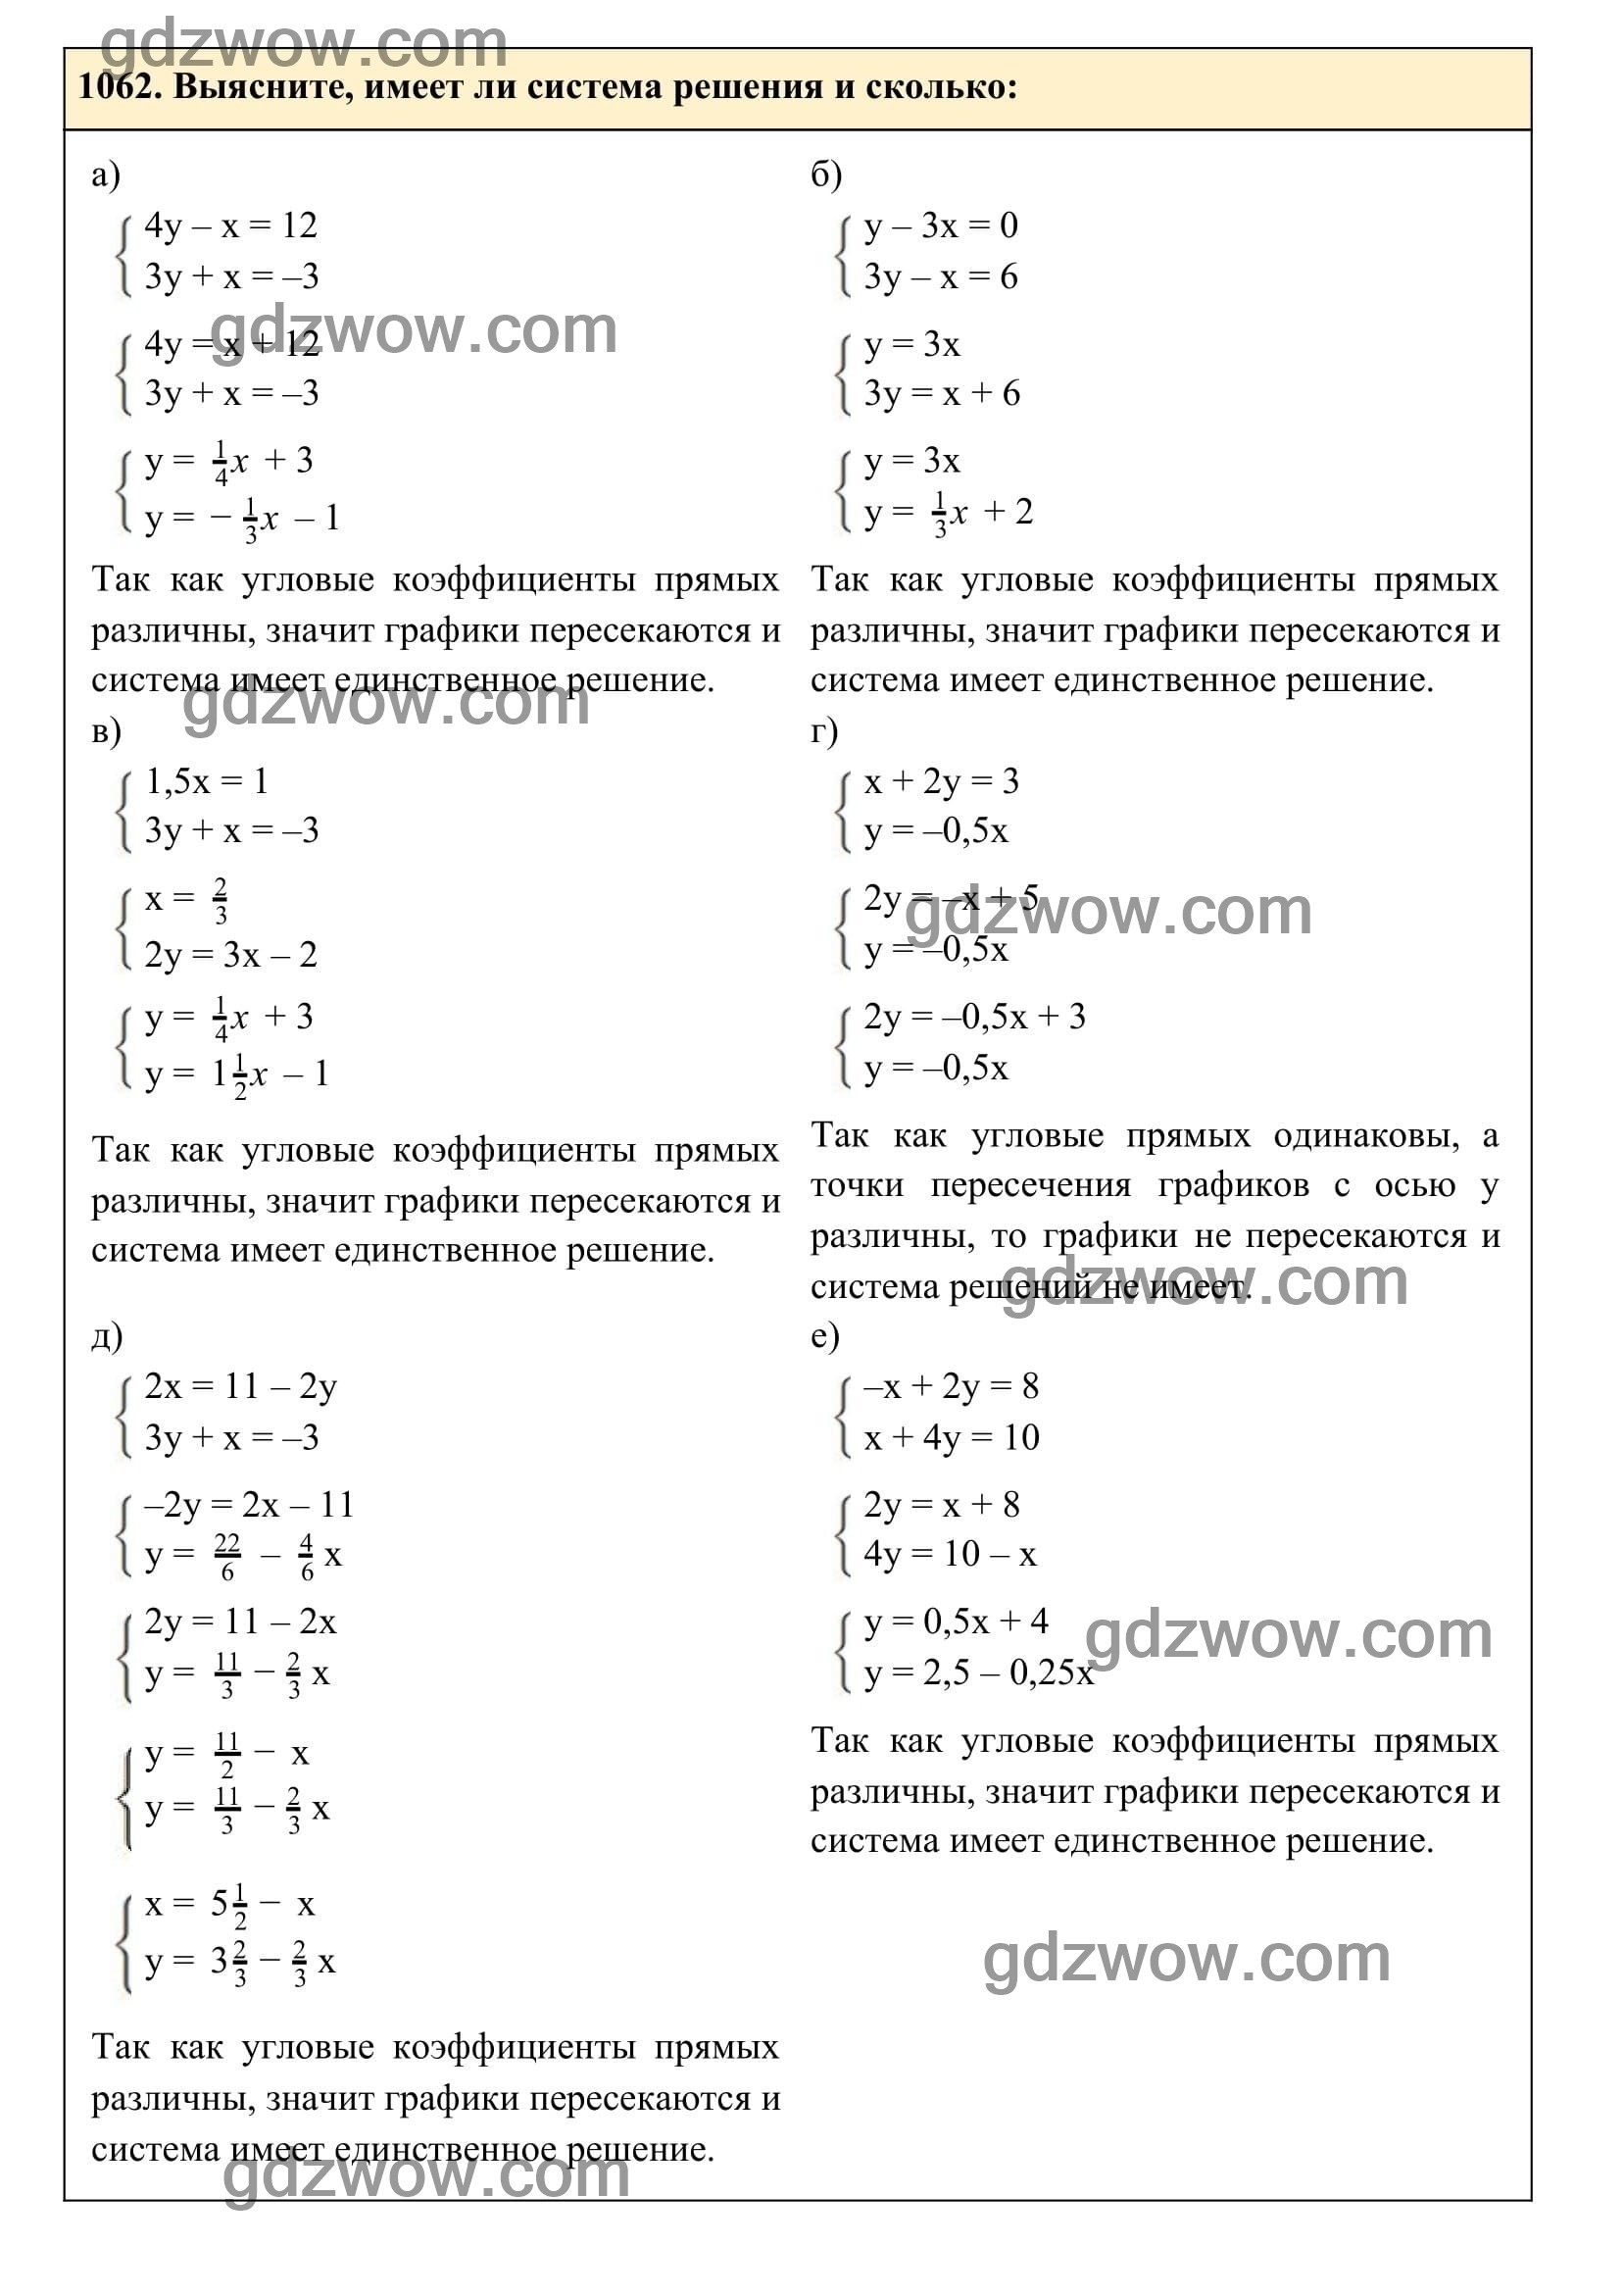 Упражнение 1062 - ГДЗ по Алгебре 7 класс Учебник Макарычев (решебник) - GDZwow